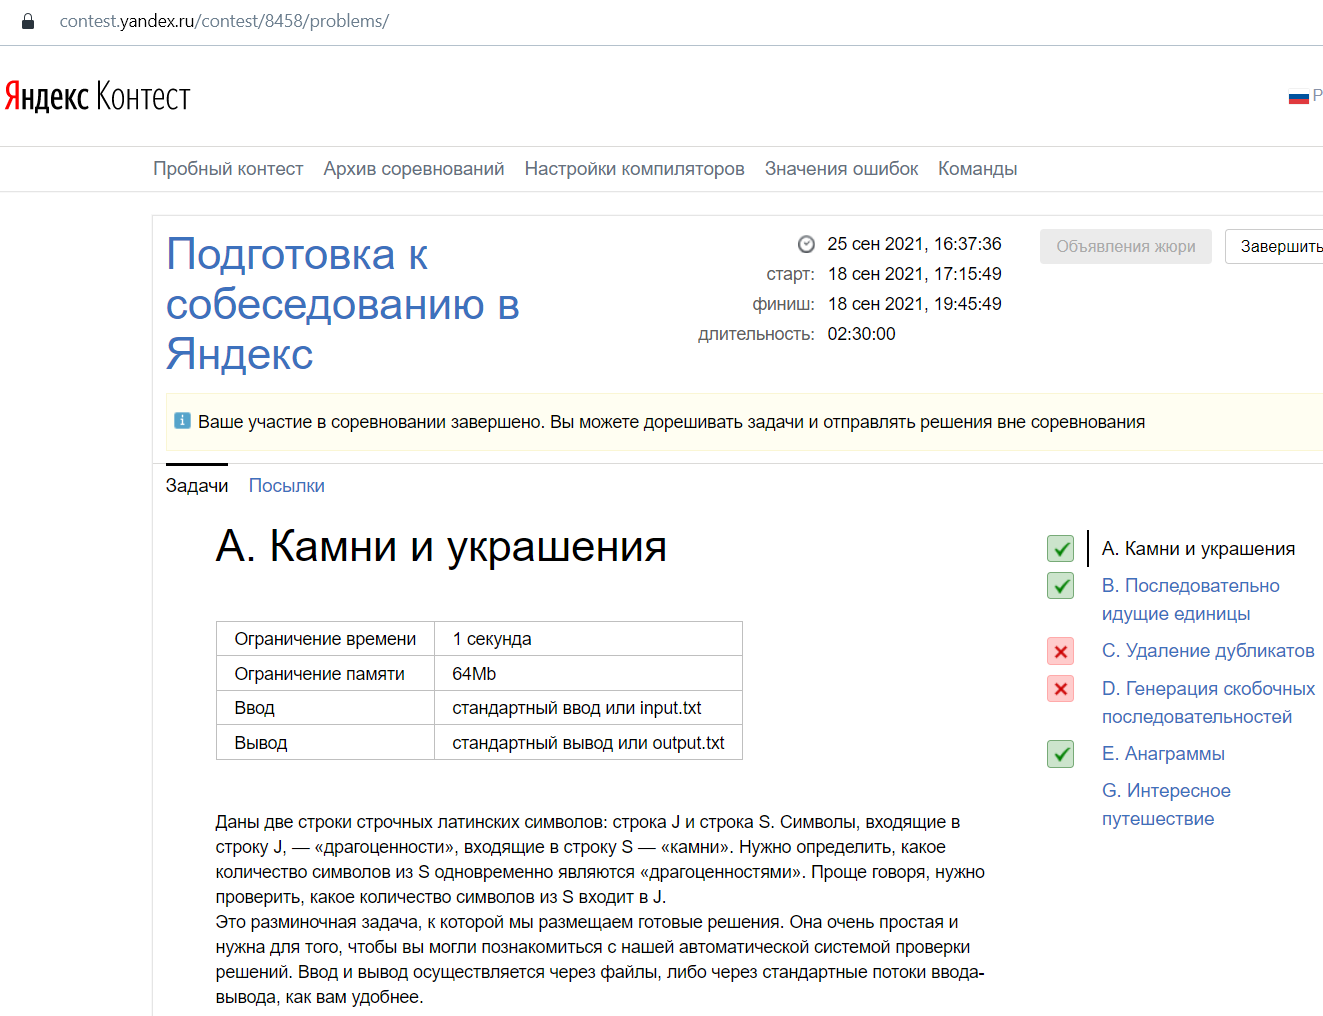 Впечатления от прохождения конкурса Яндекс «One Day Offer Frontend» / Хабр